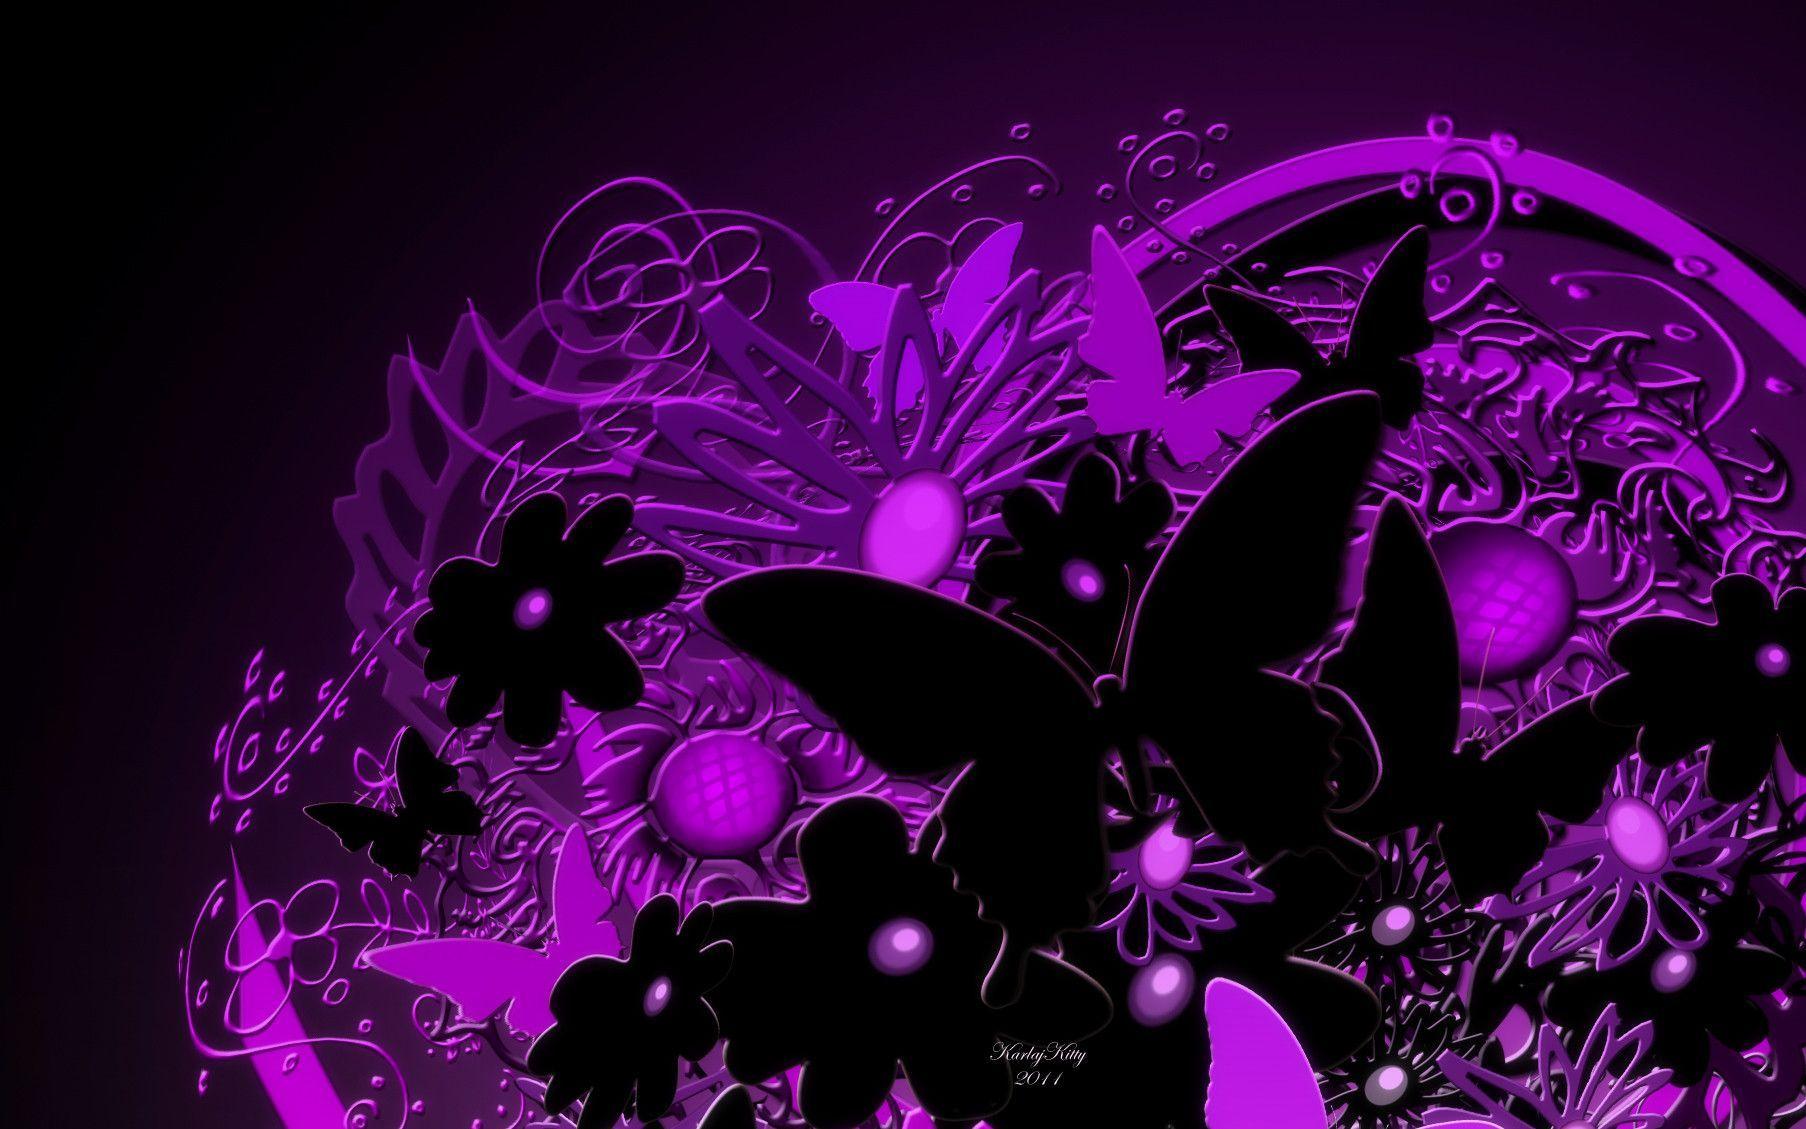 Wallpaper For > Purple Butterfly Wallpaper